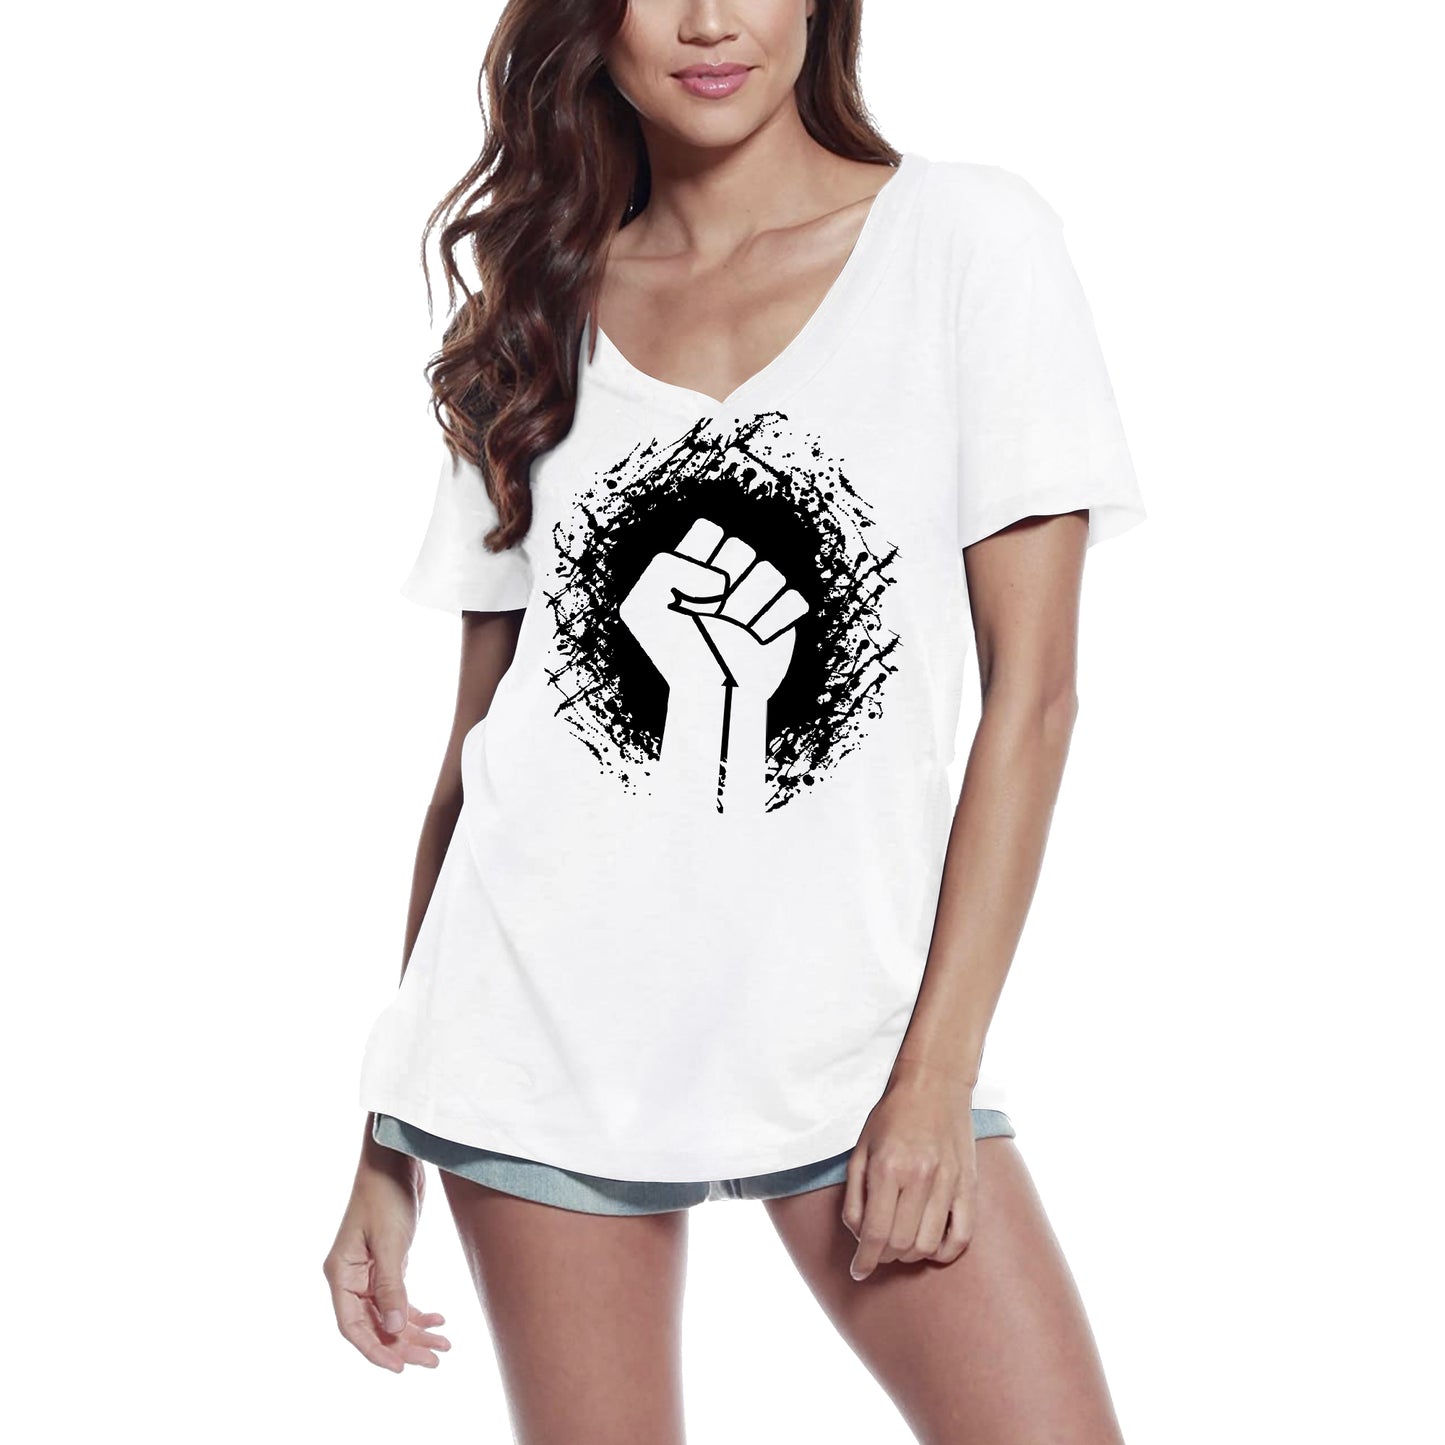 ULTRABASIC Women's T-Shirt Fist Power - Strength Short Sleeve Tee Shirt Gift Tops